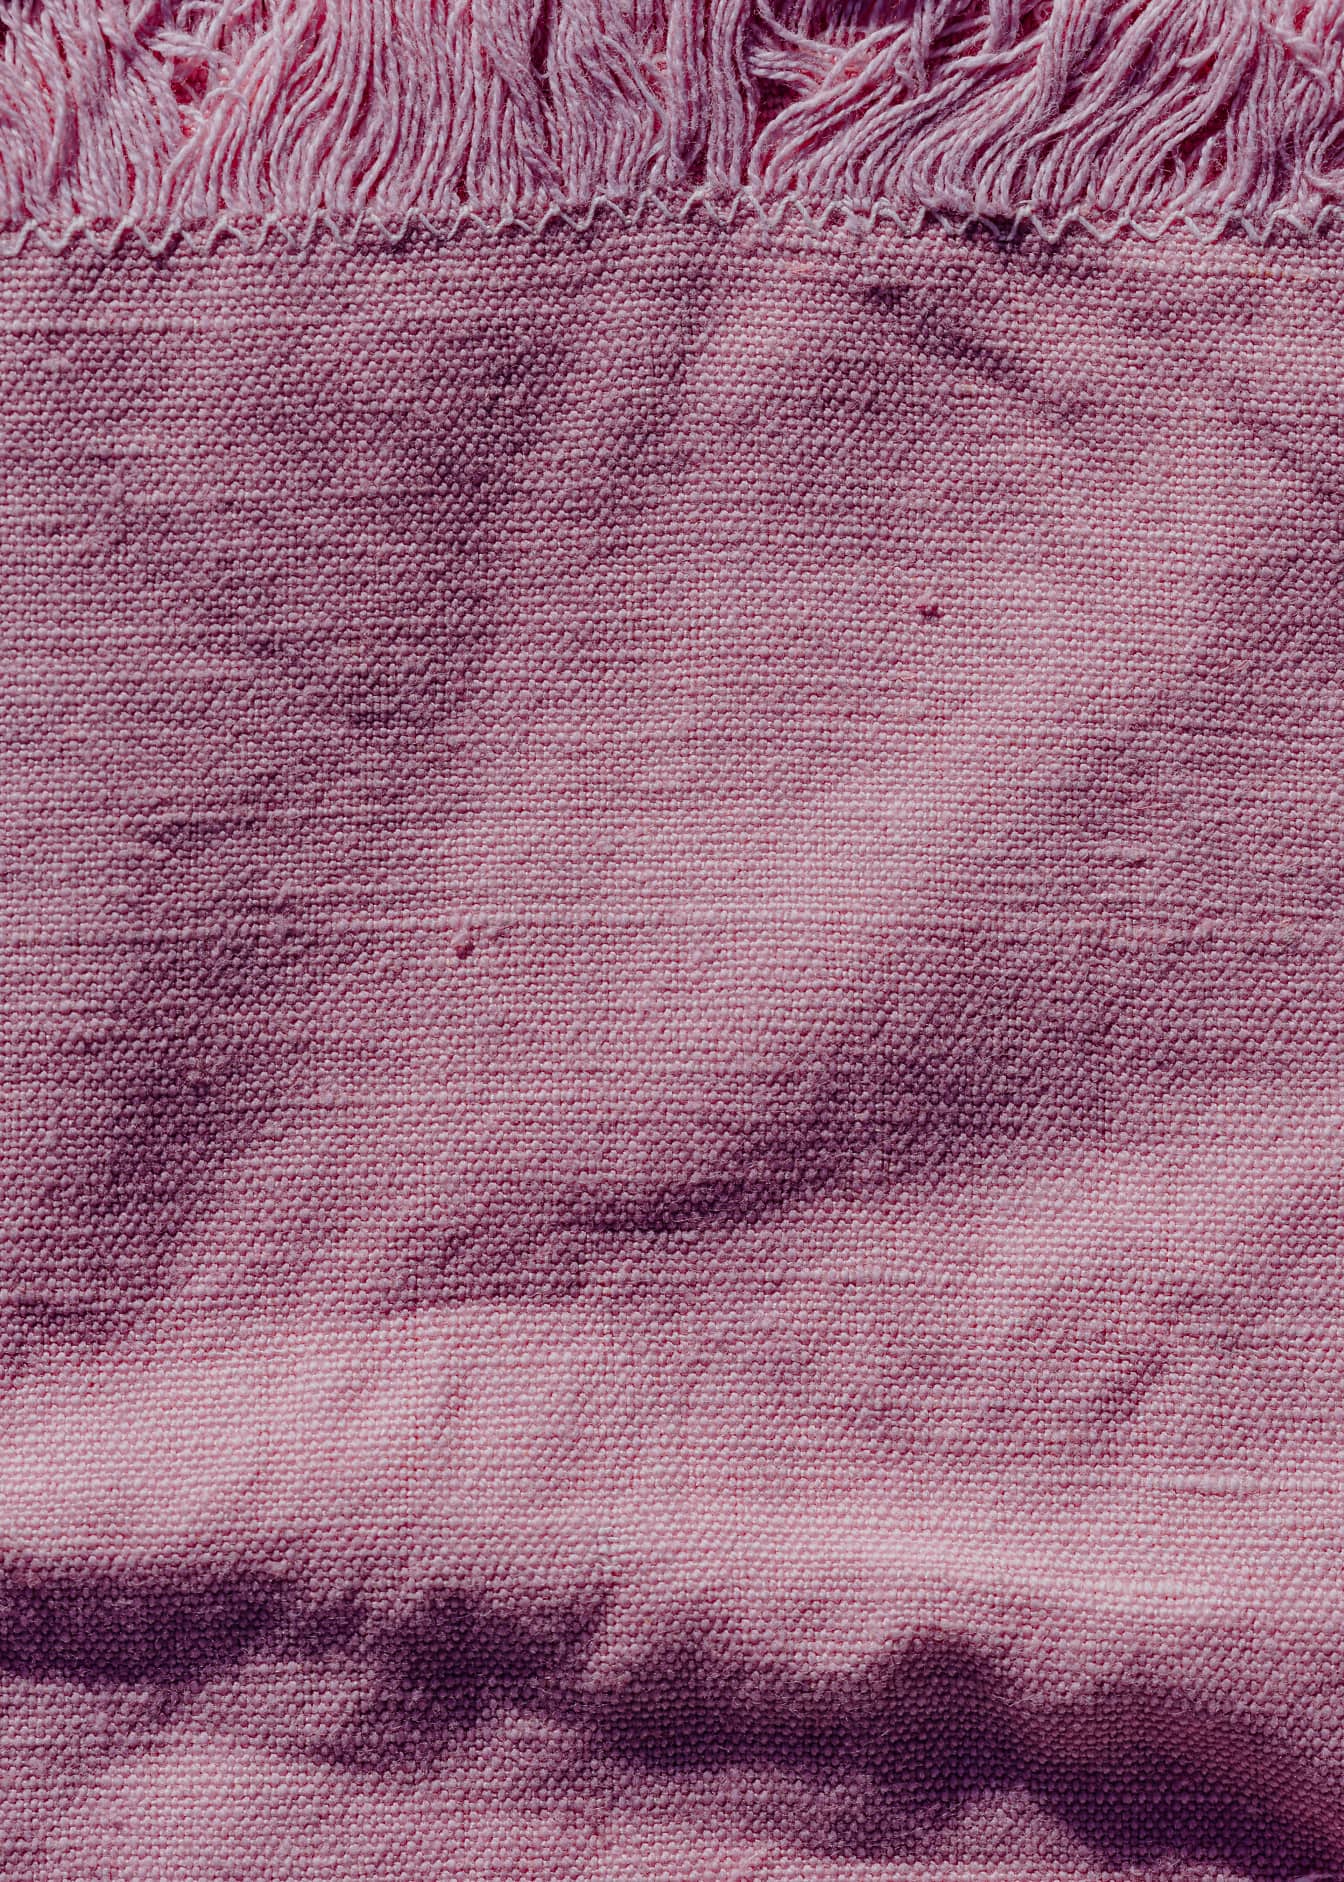 Υφή ενός τραχιού λινού ροζ υφάσματος με περιθώρια στην άκρη